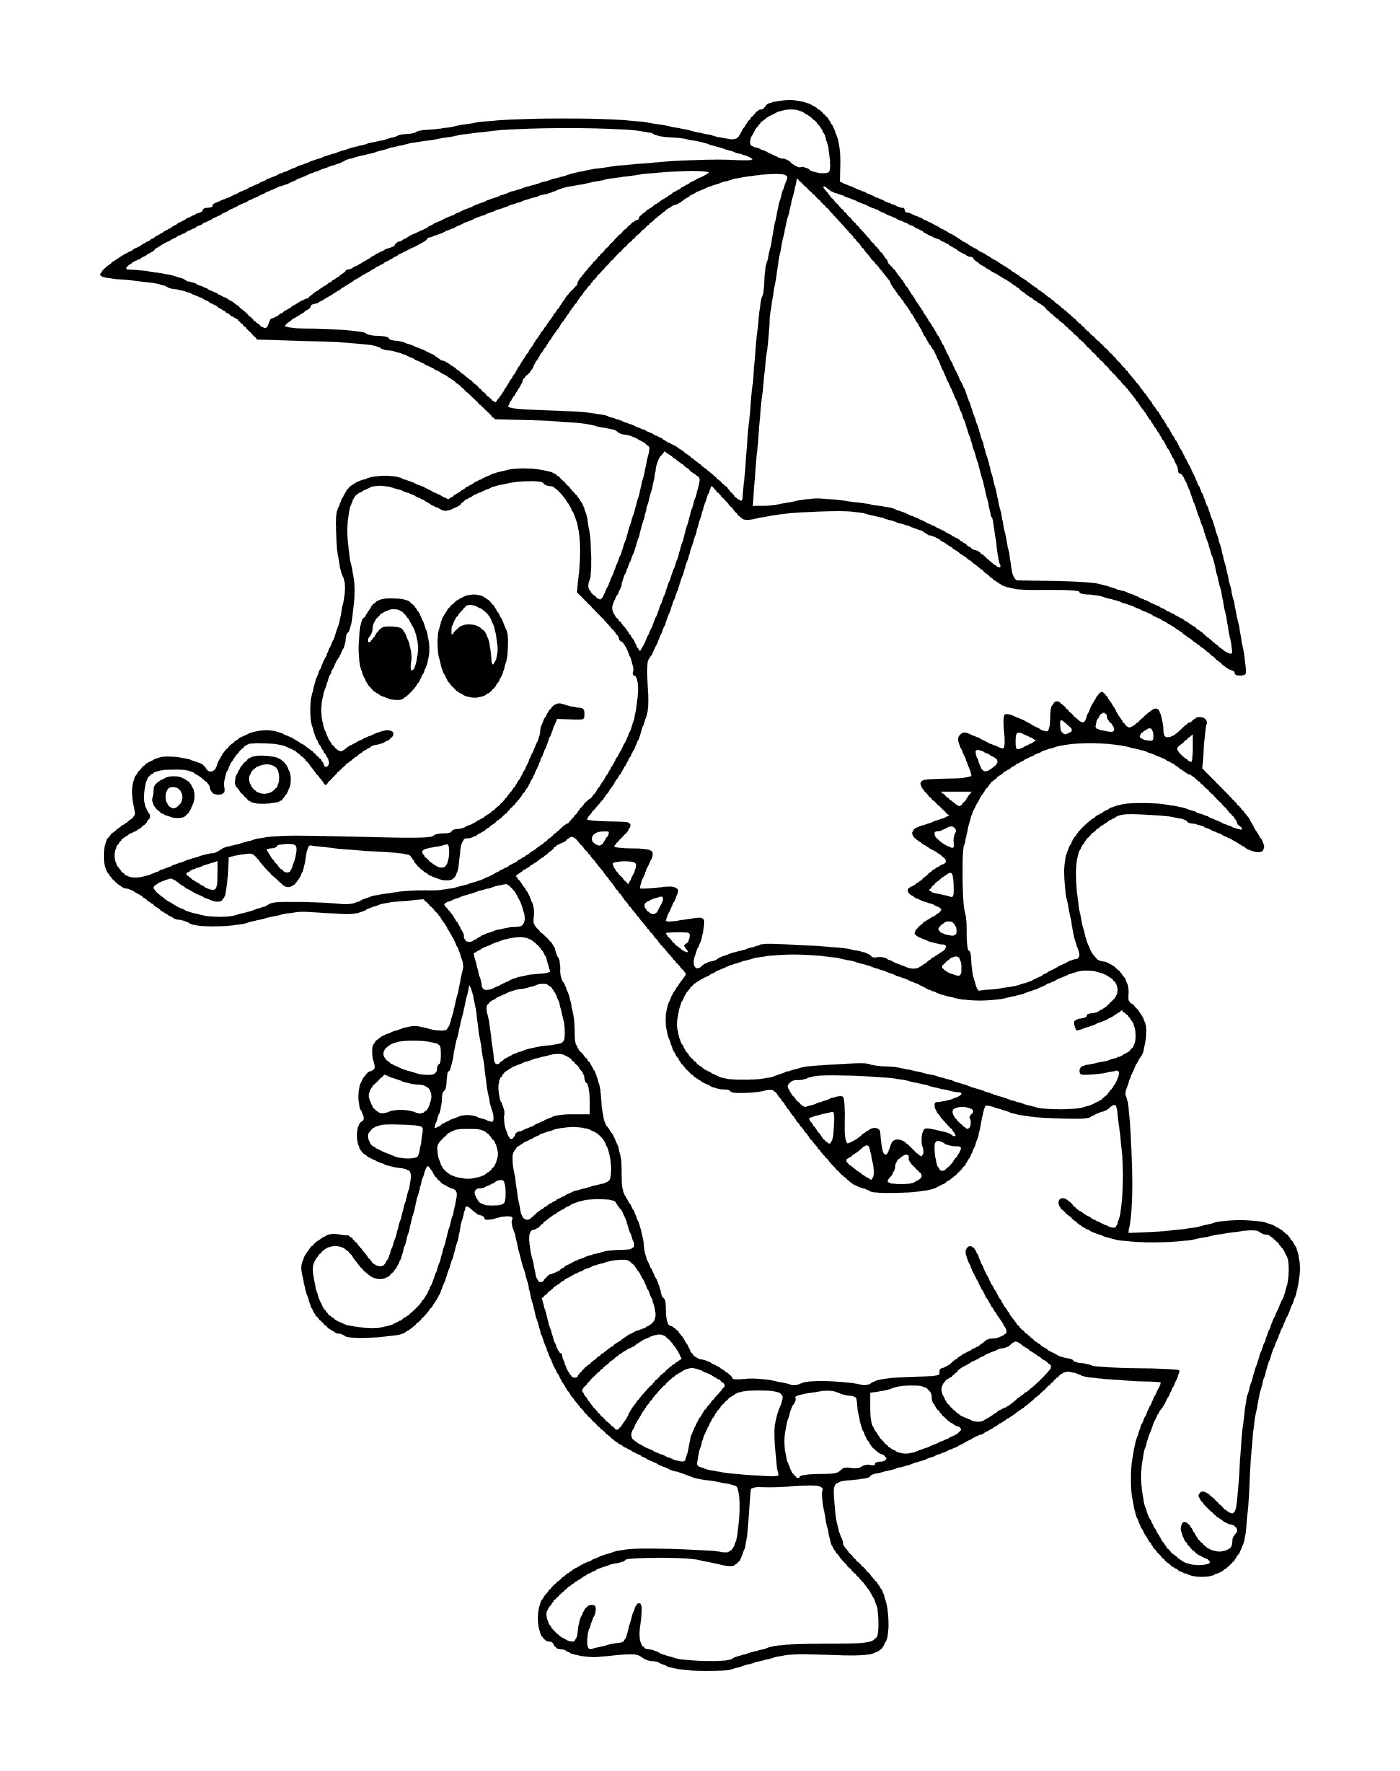   Un crocodile tenant un parapluie 